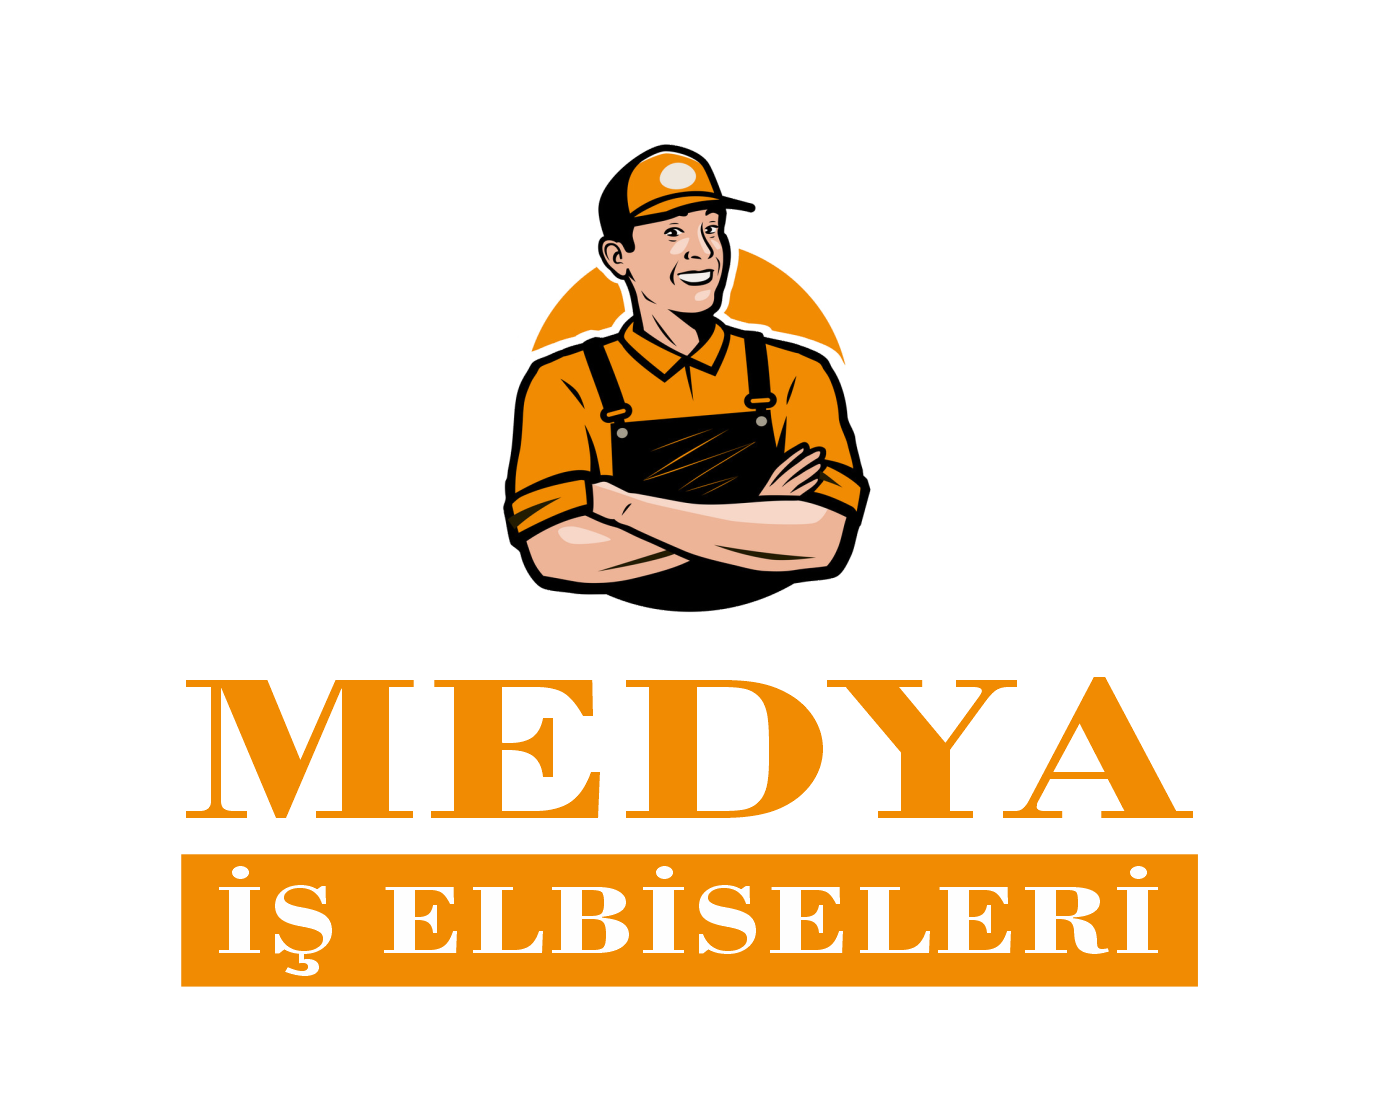 medya-is-elbiseleri-1